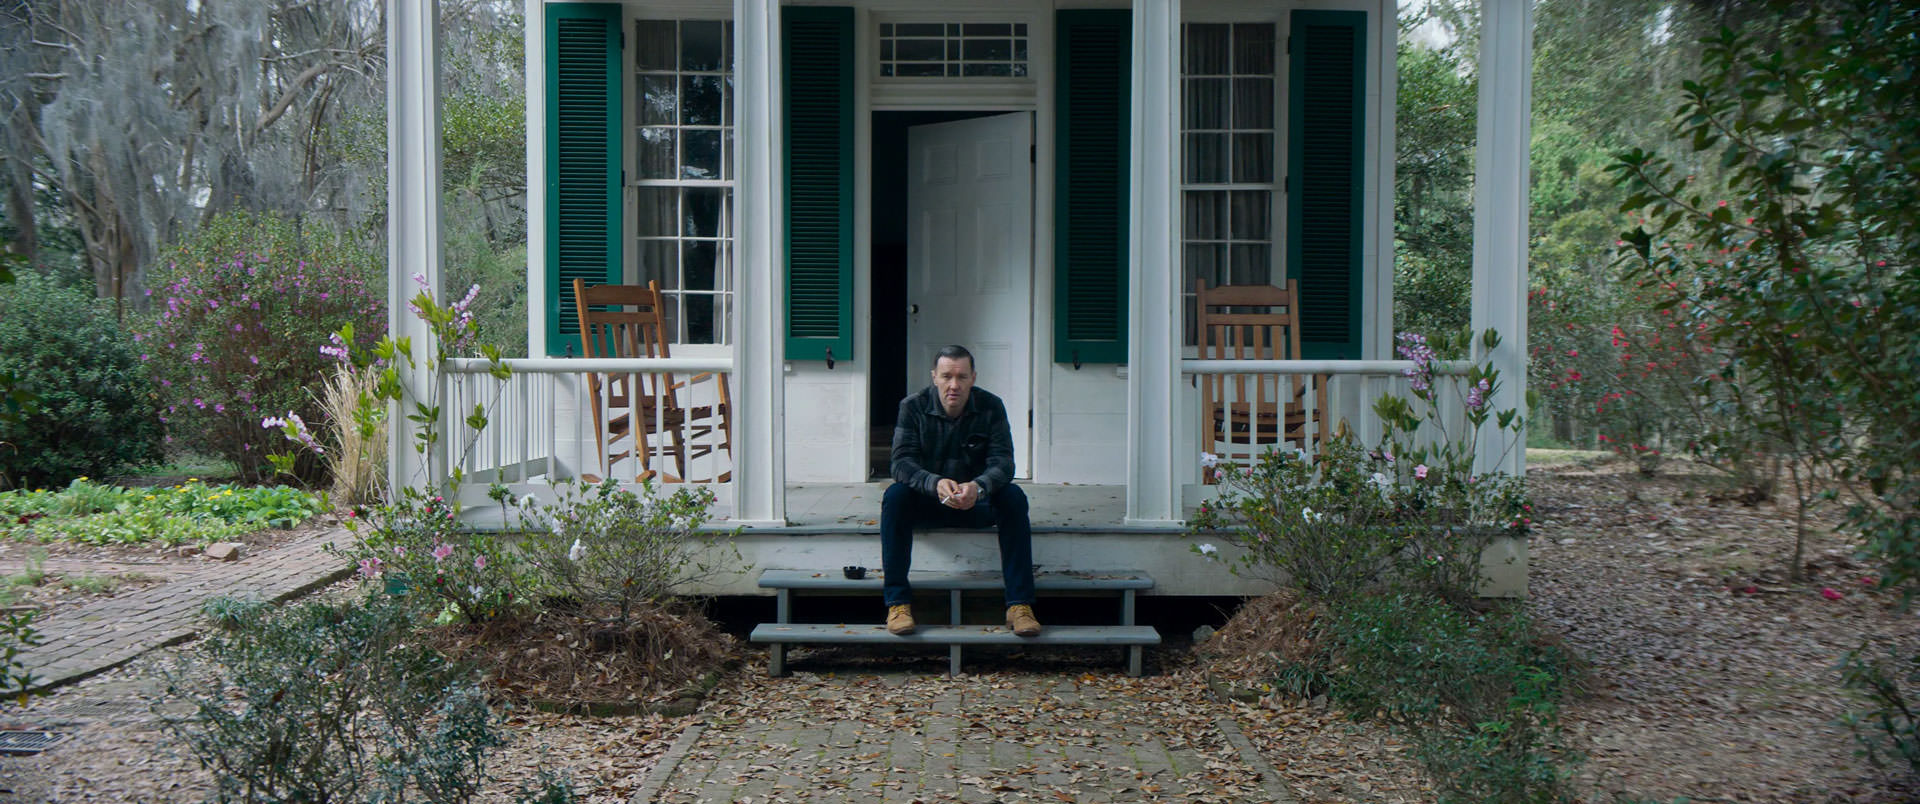 جول اجرتوت نشسته روی پله‌ی مقابل در ورودی یک کلبه‌ی سفید رنگ در نمایی از فیلم استاد باغبان به کارگردانی پل شریدر